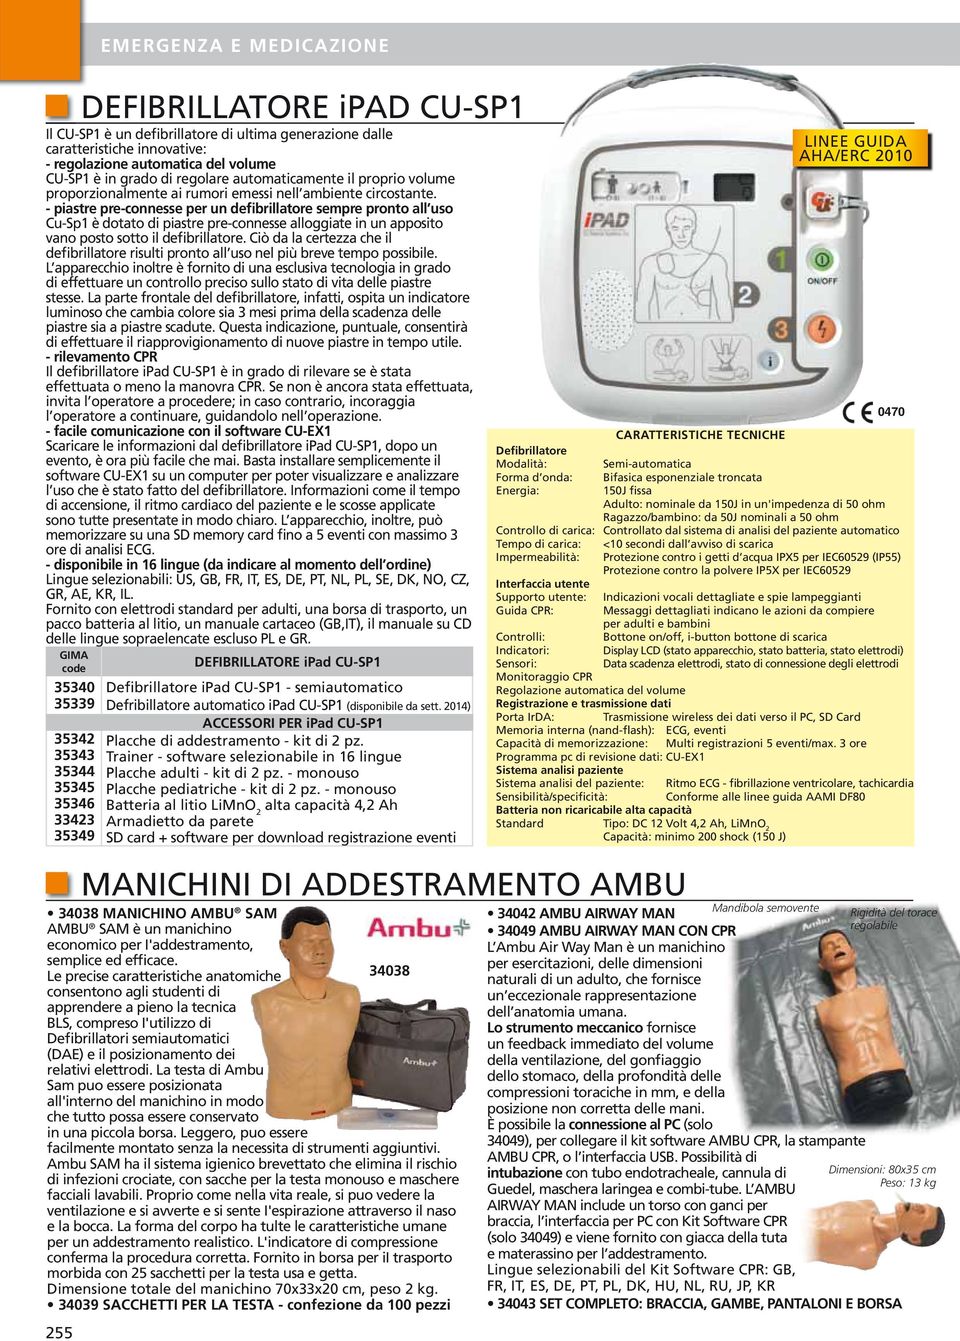 piastre preconnesse per un defibrillatore sempre pronto all uso CuSp è dotato di piastre preconnesse alloggiate in un apposito vano posto sotto il defibrillatore.